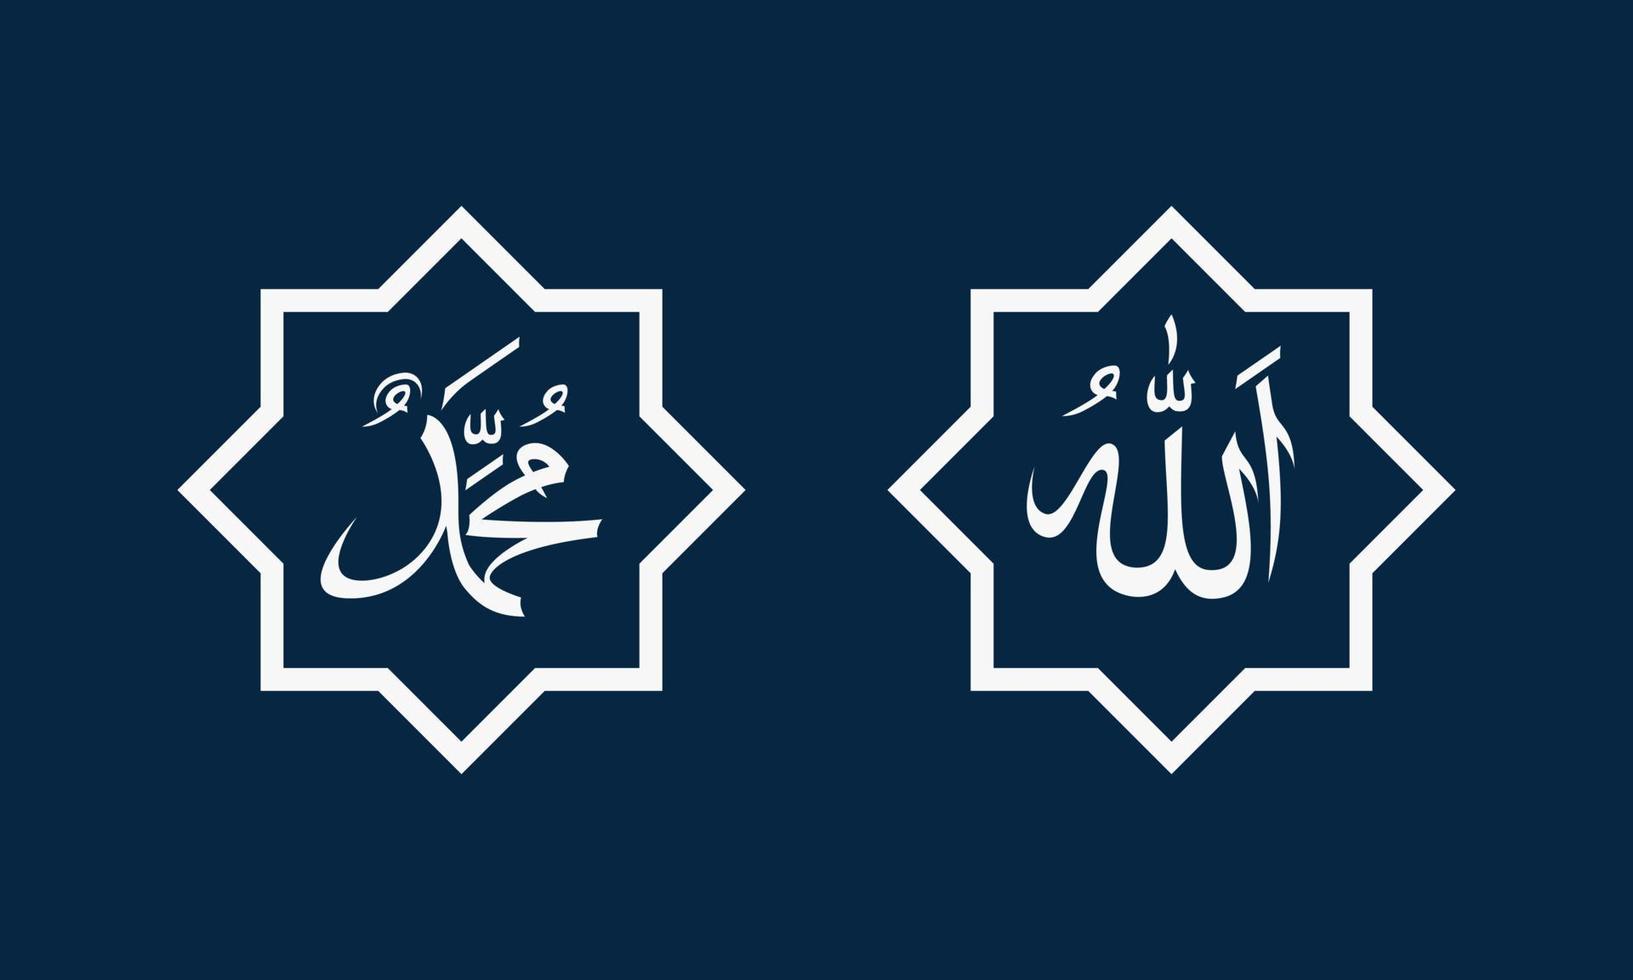 caligrafía de alá y el profeta muhammad. adorno sobre fondo azul. vector